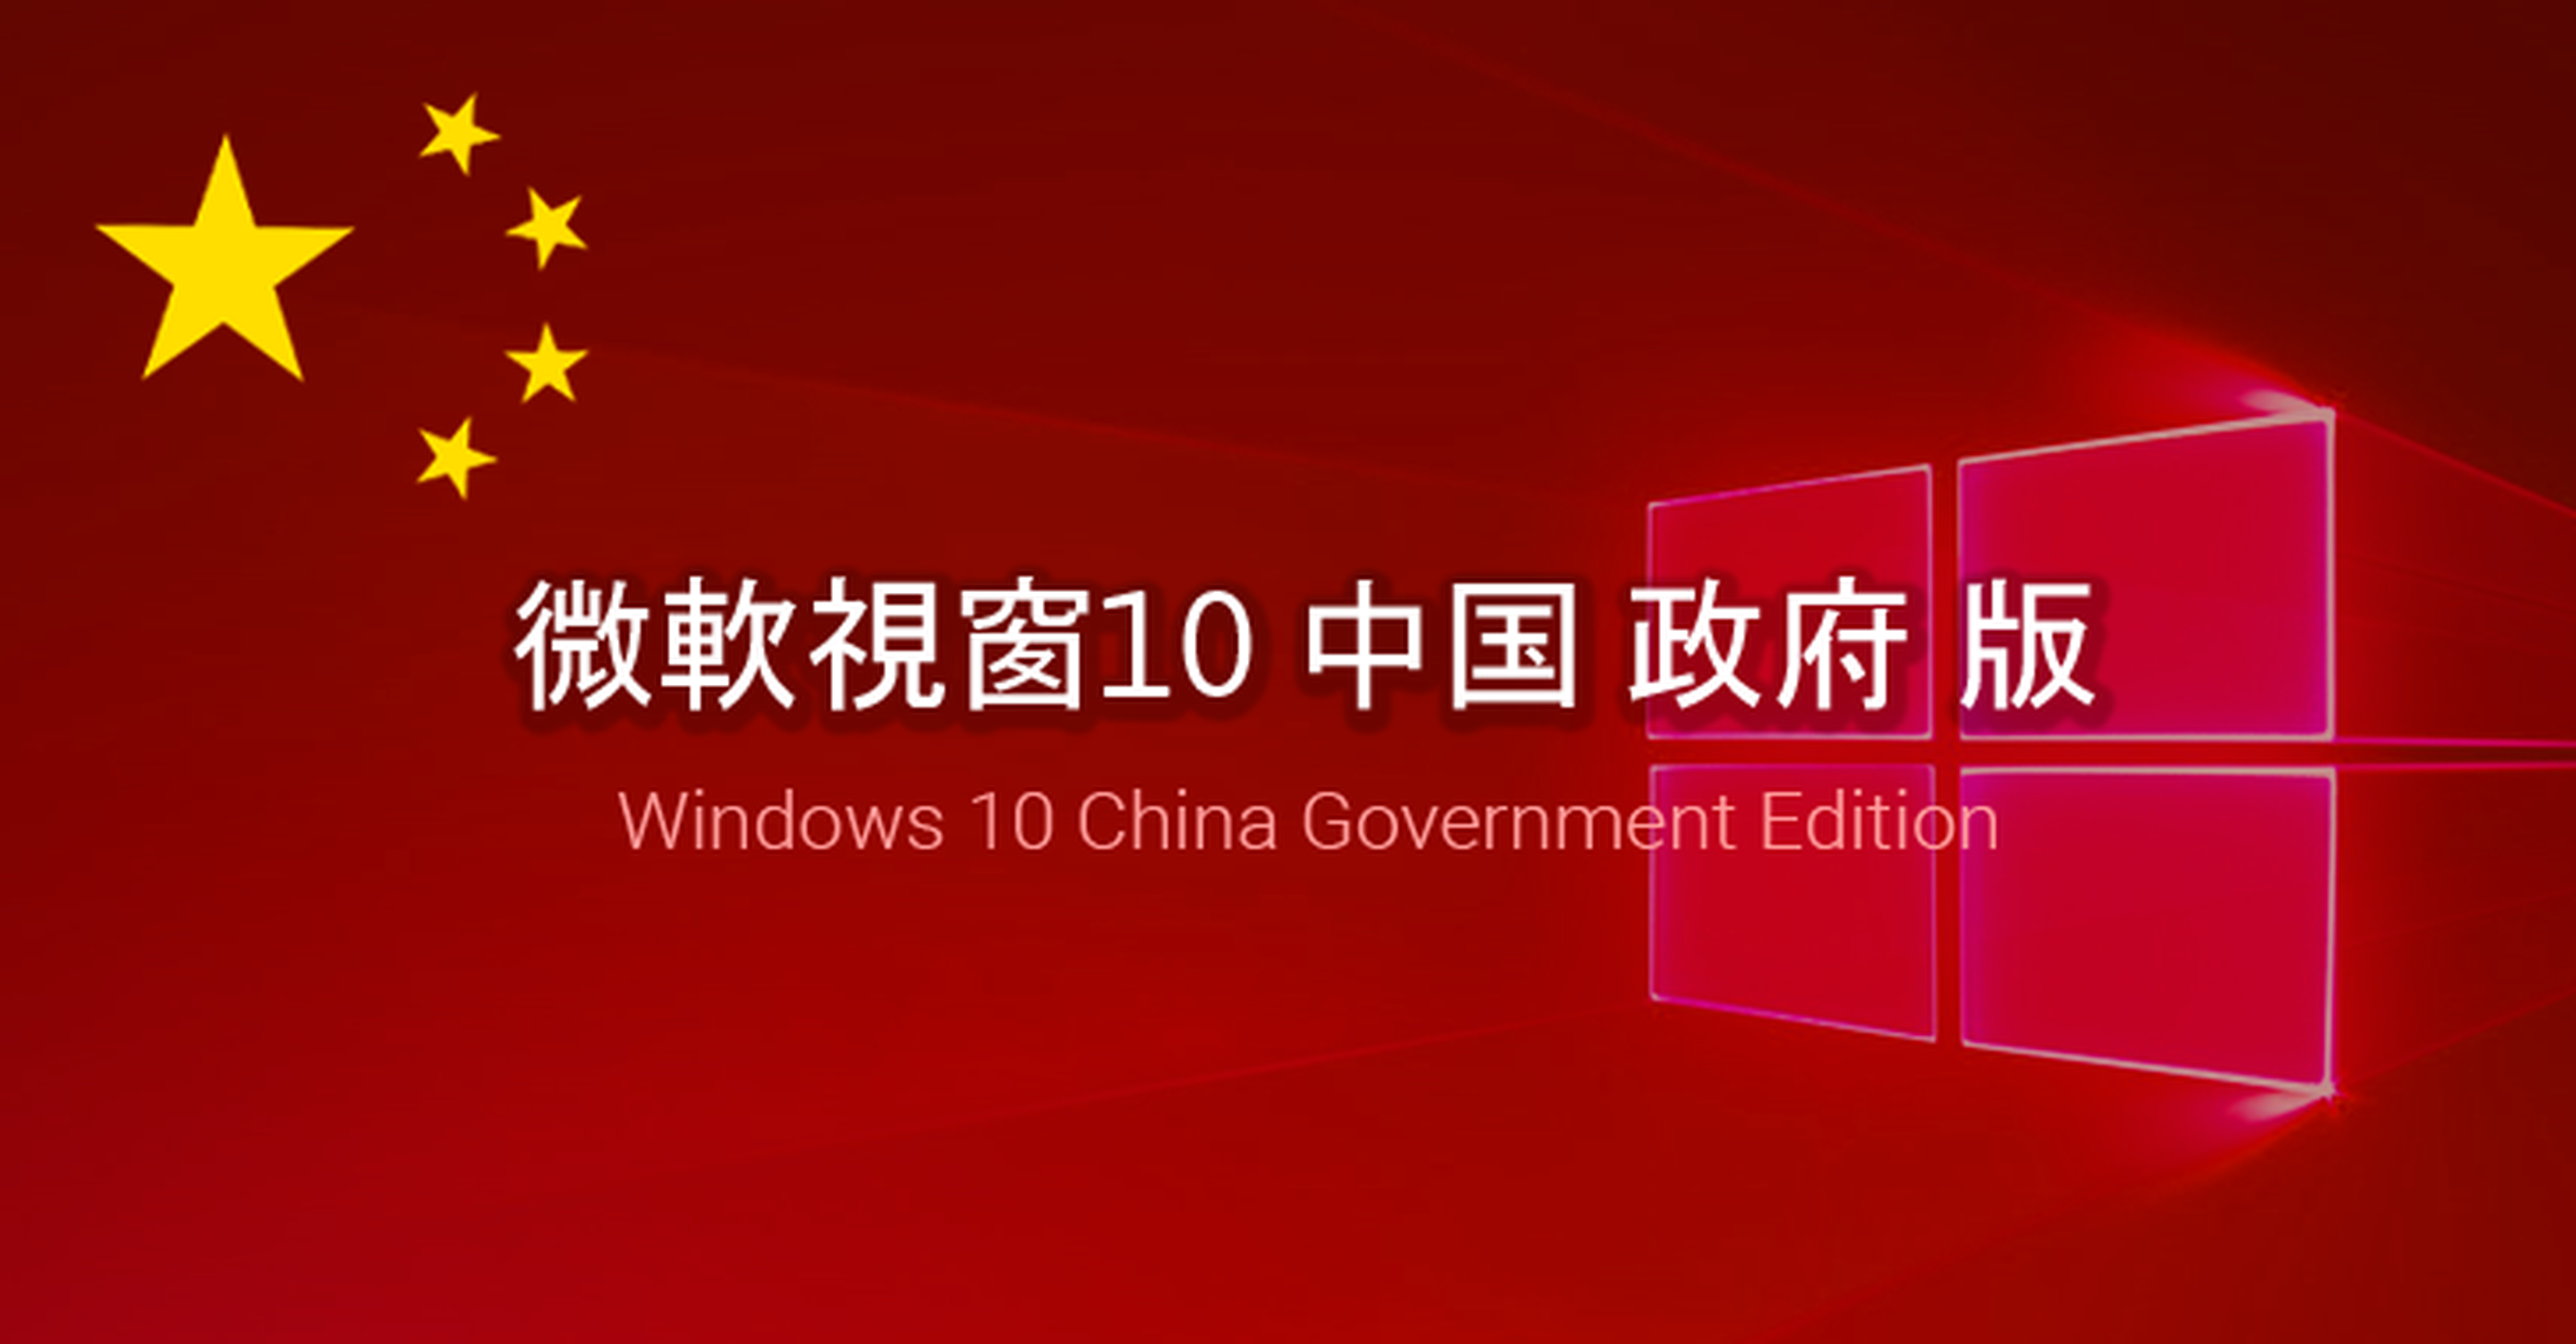 Windows 10 china